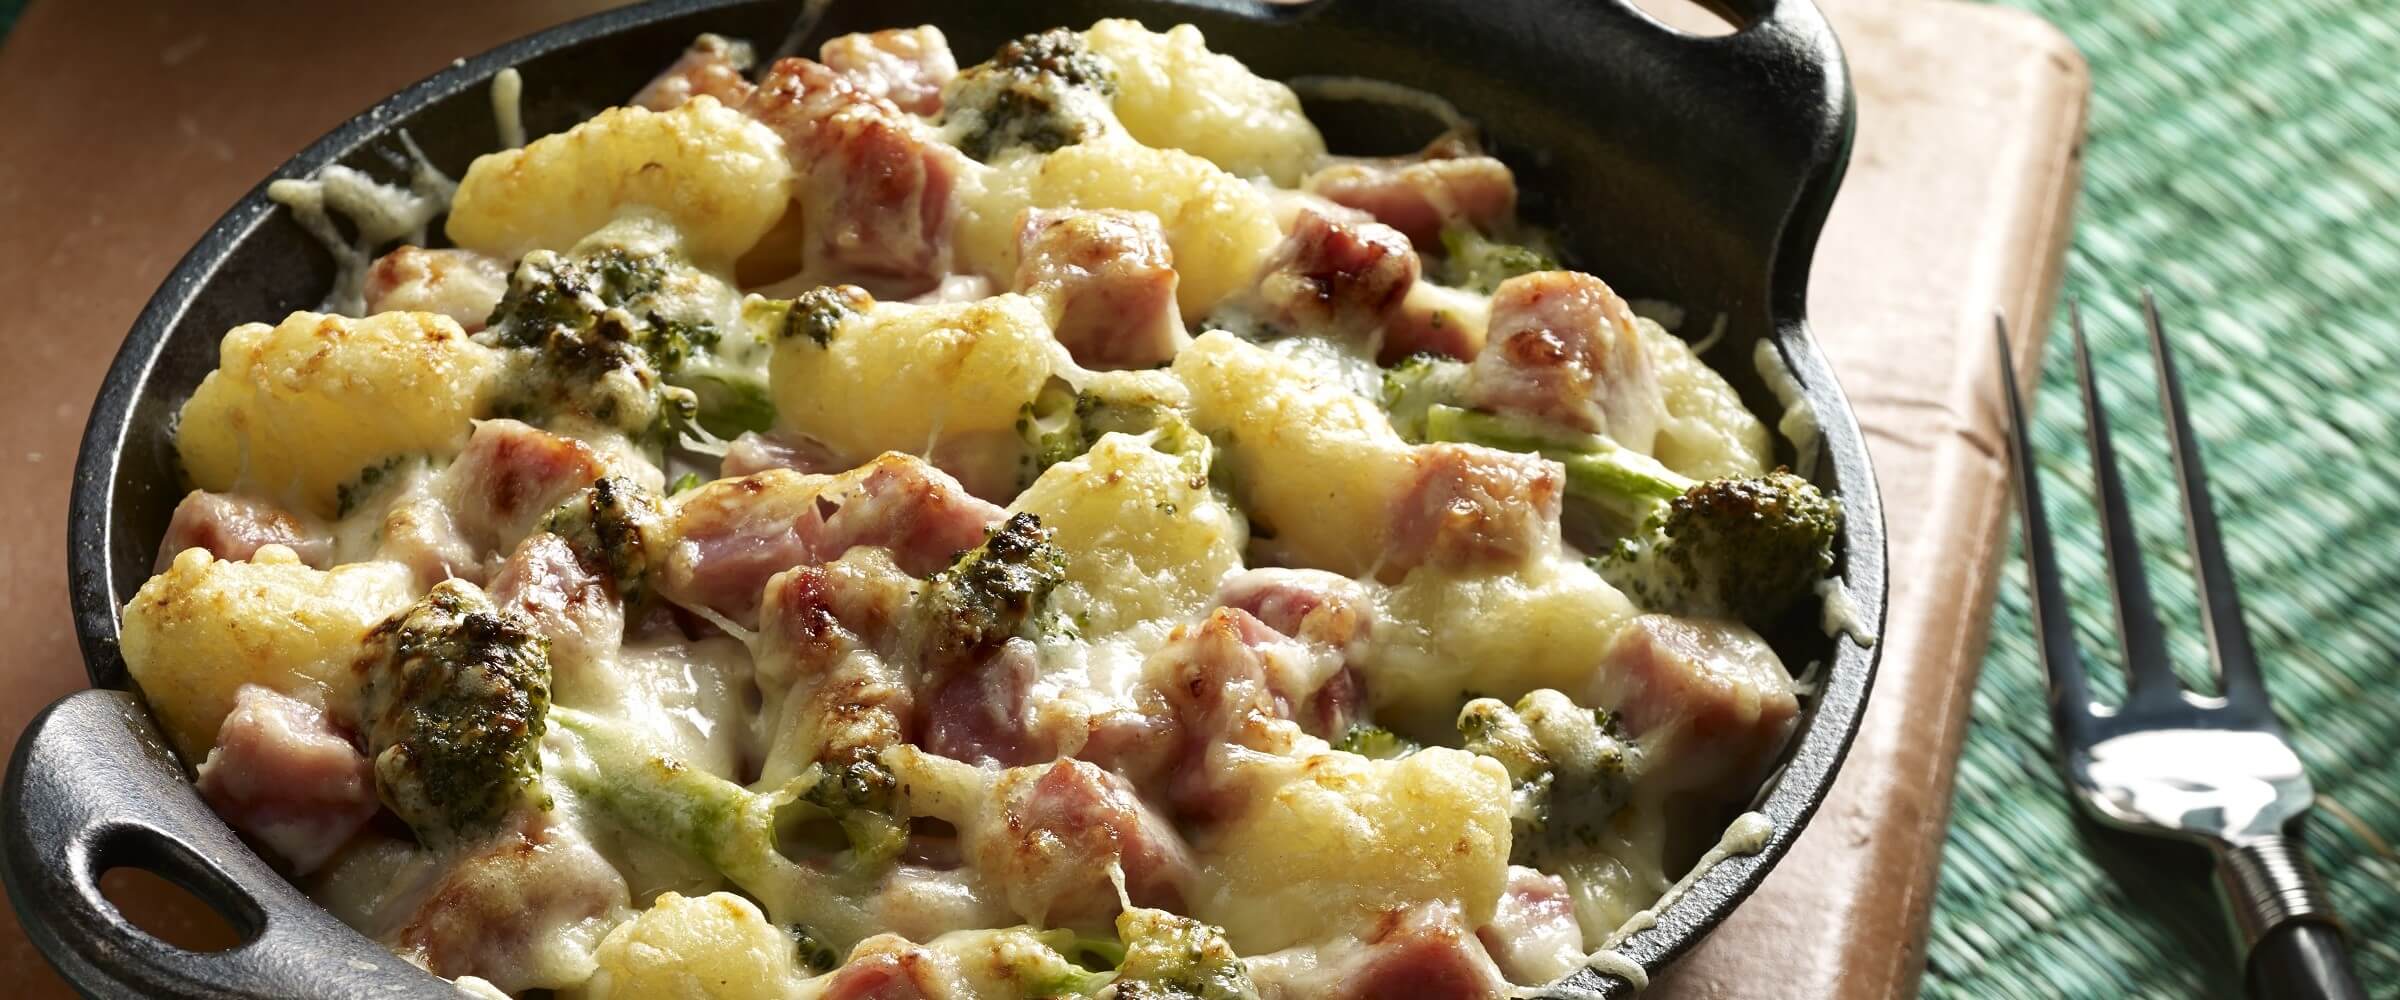 creamy ham and broccoli gnocchi in cast iron skillet